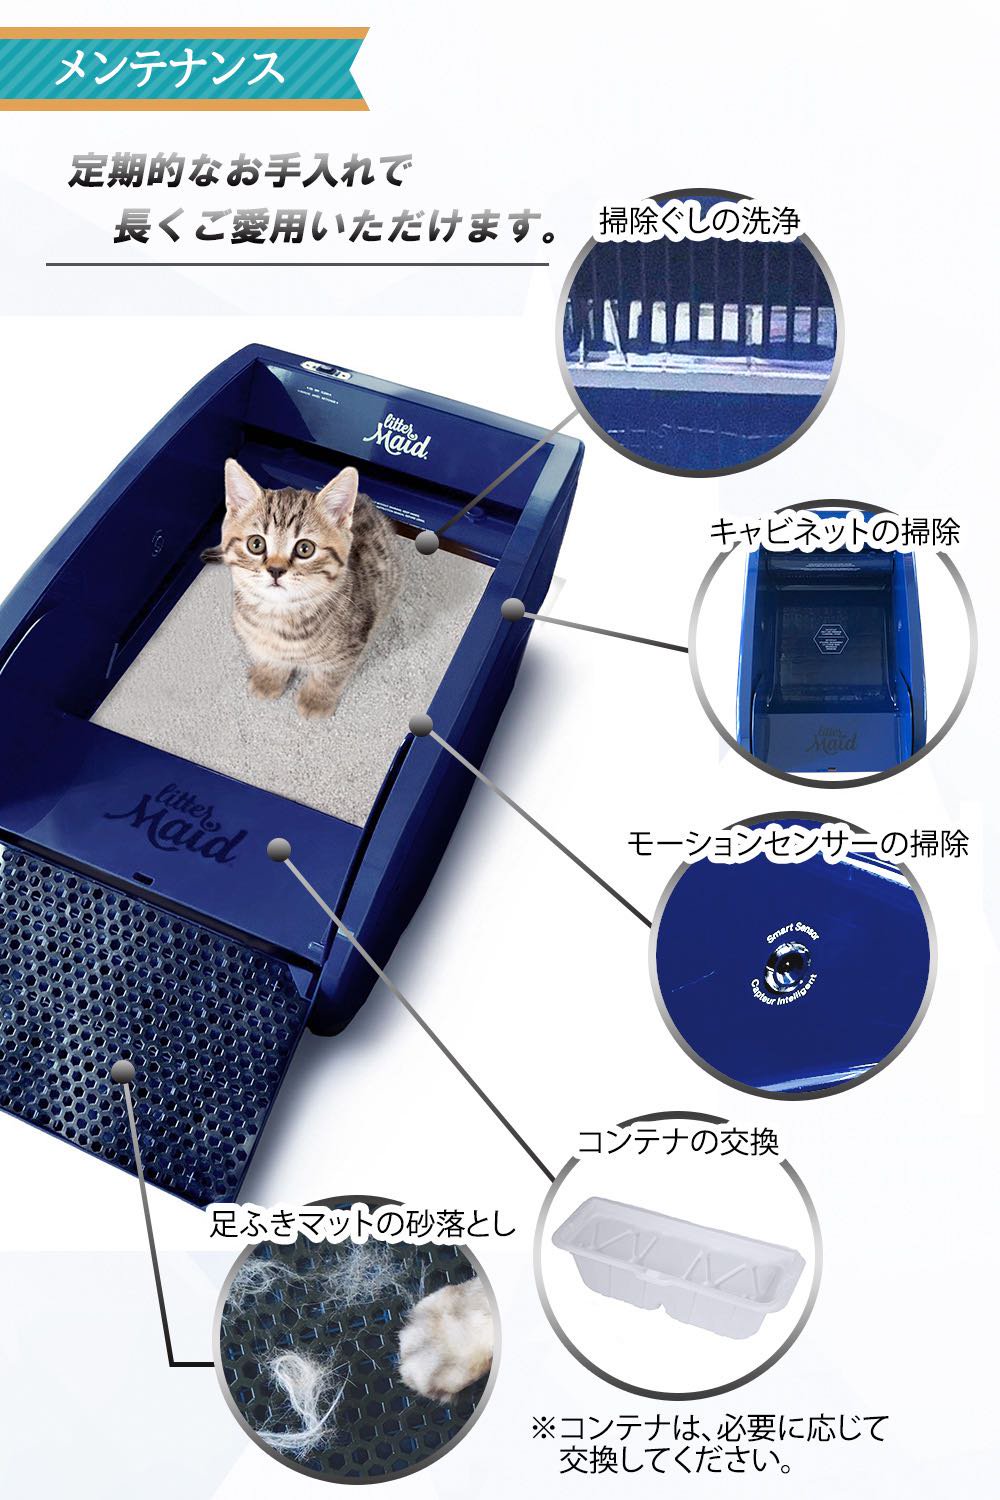 リッターメイド 全自動猫トイレ - メンテナンス